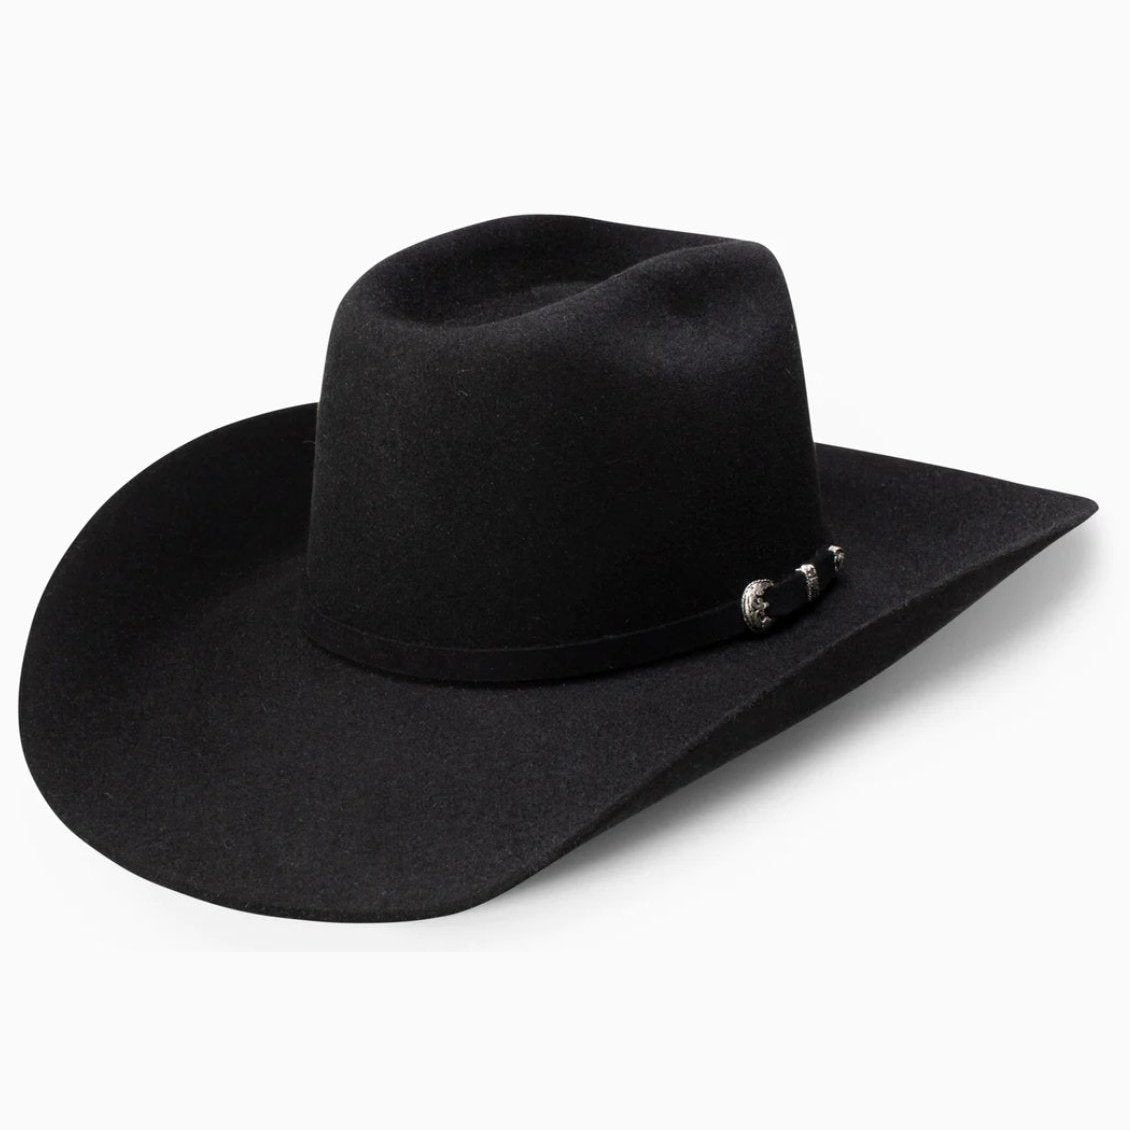 Resistol Cody Johnson The SP 6X Felt Cowboy Hat Sahara / 7